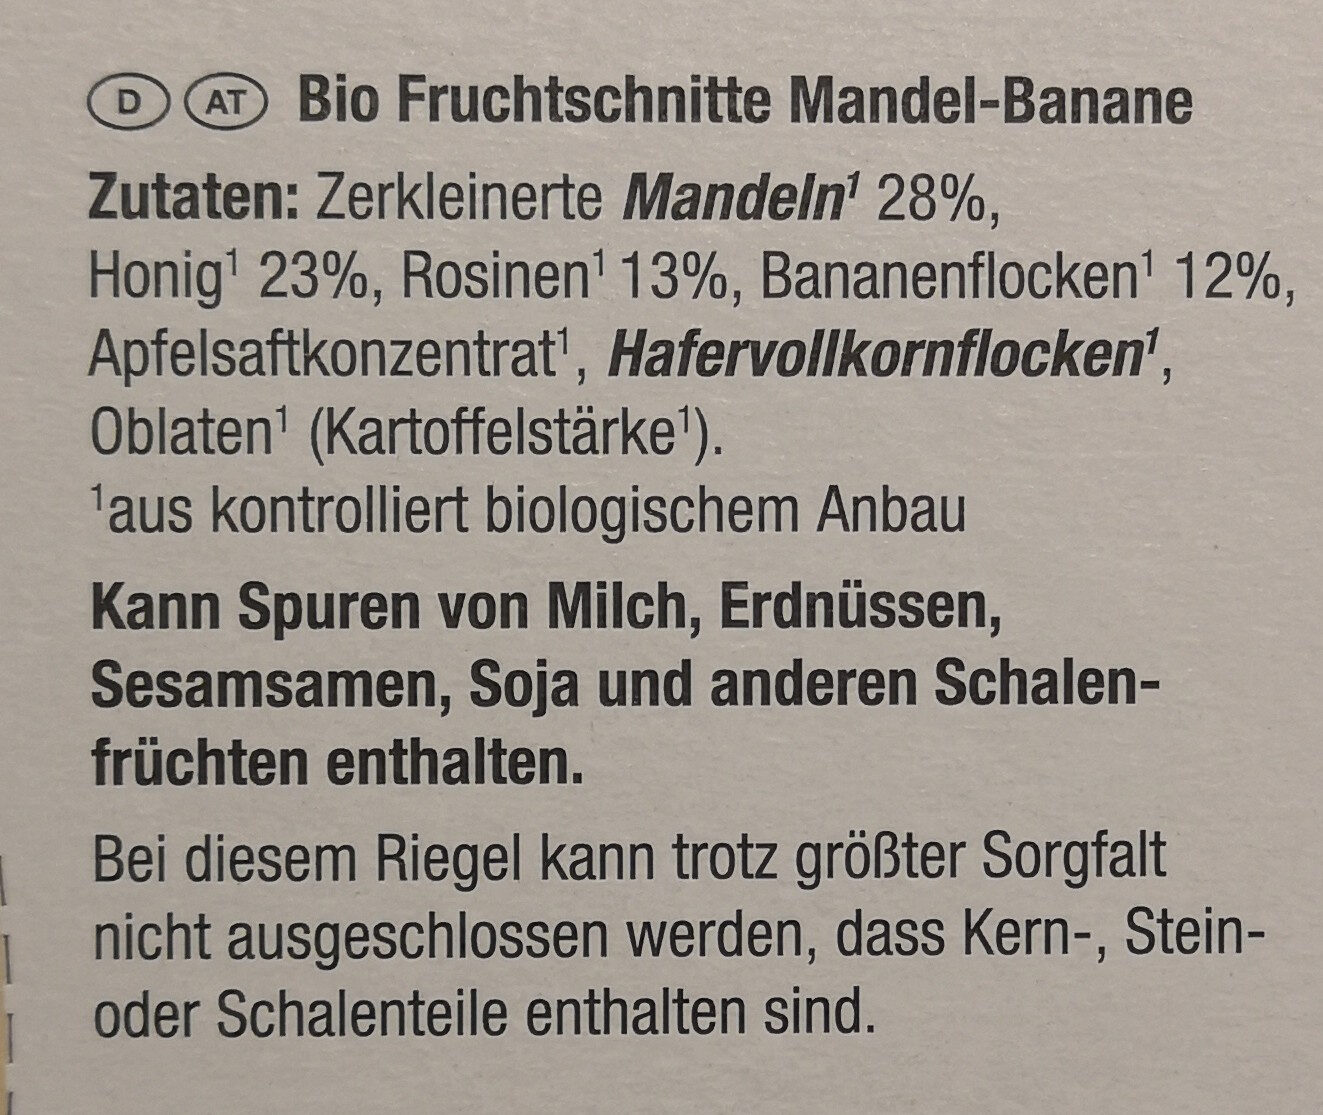 Bio-Fruchtschnitte Mandel-Banane - Zutaten